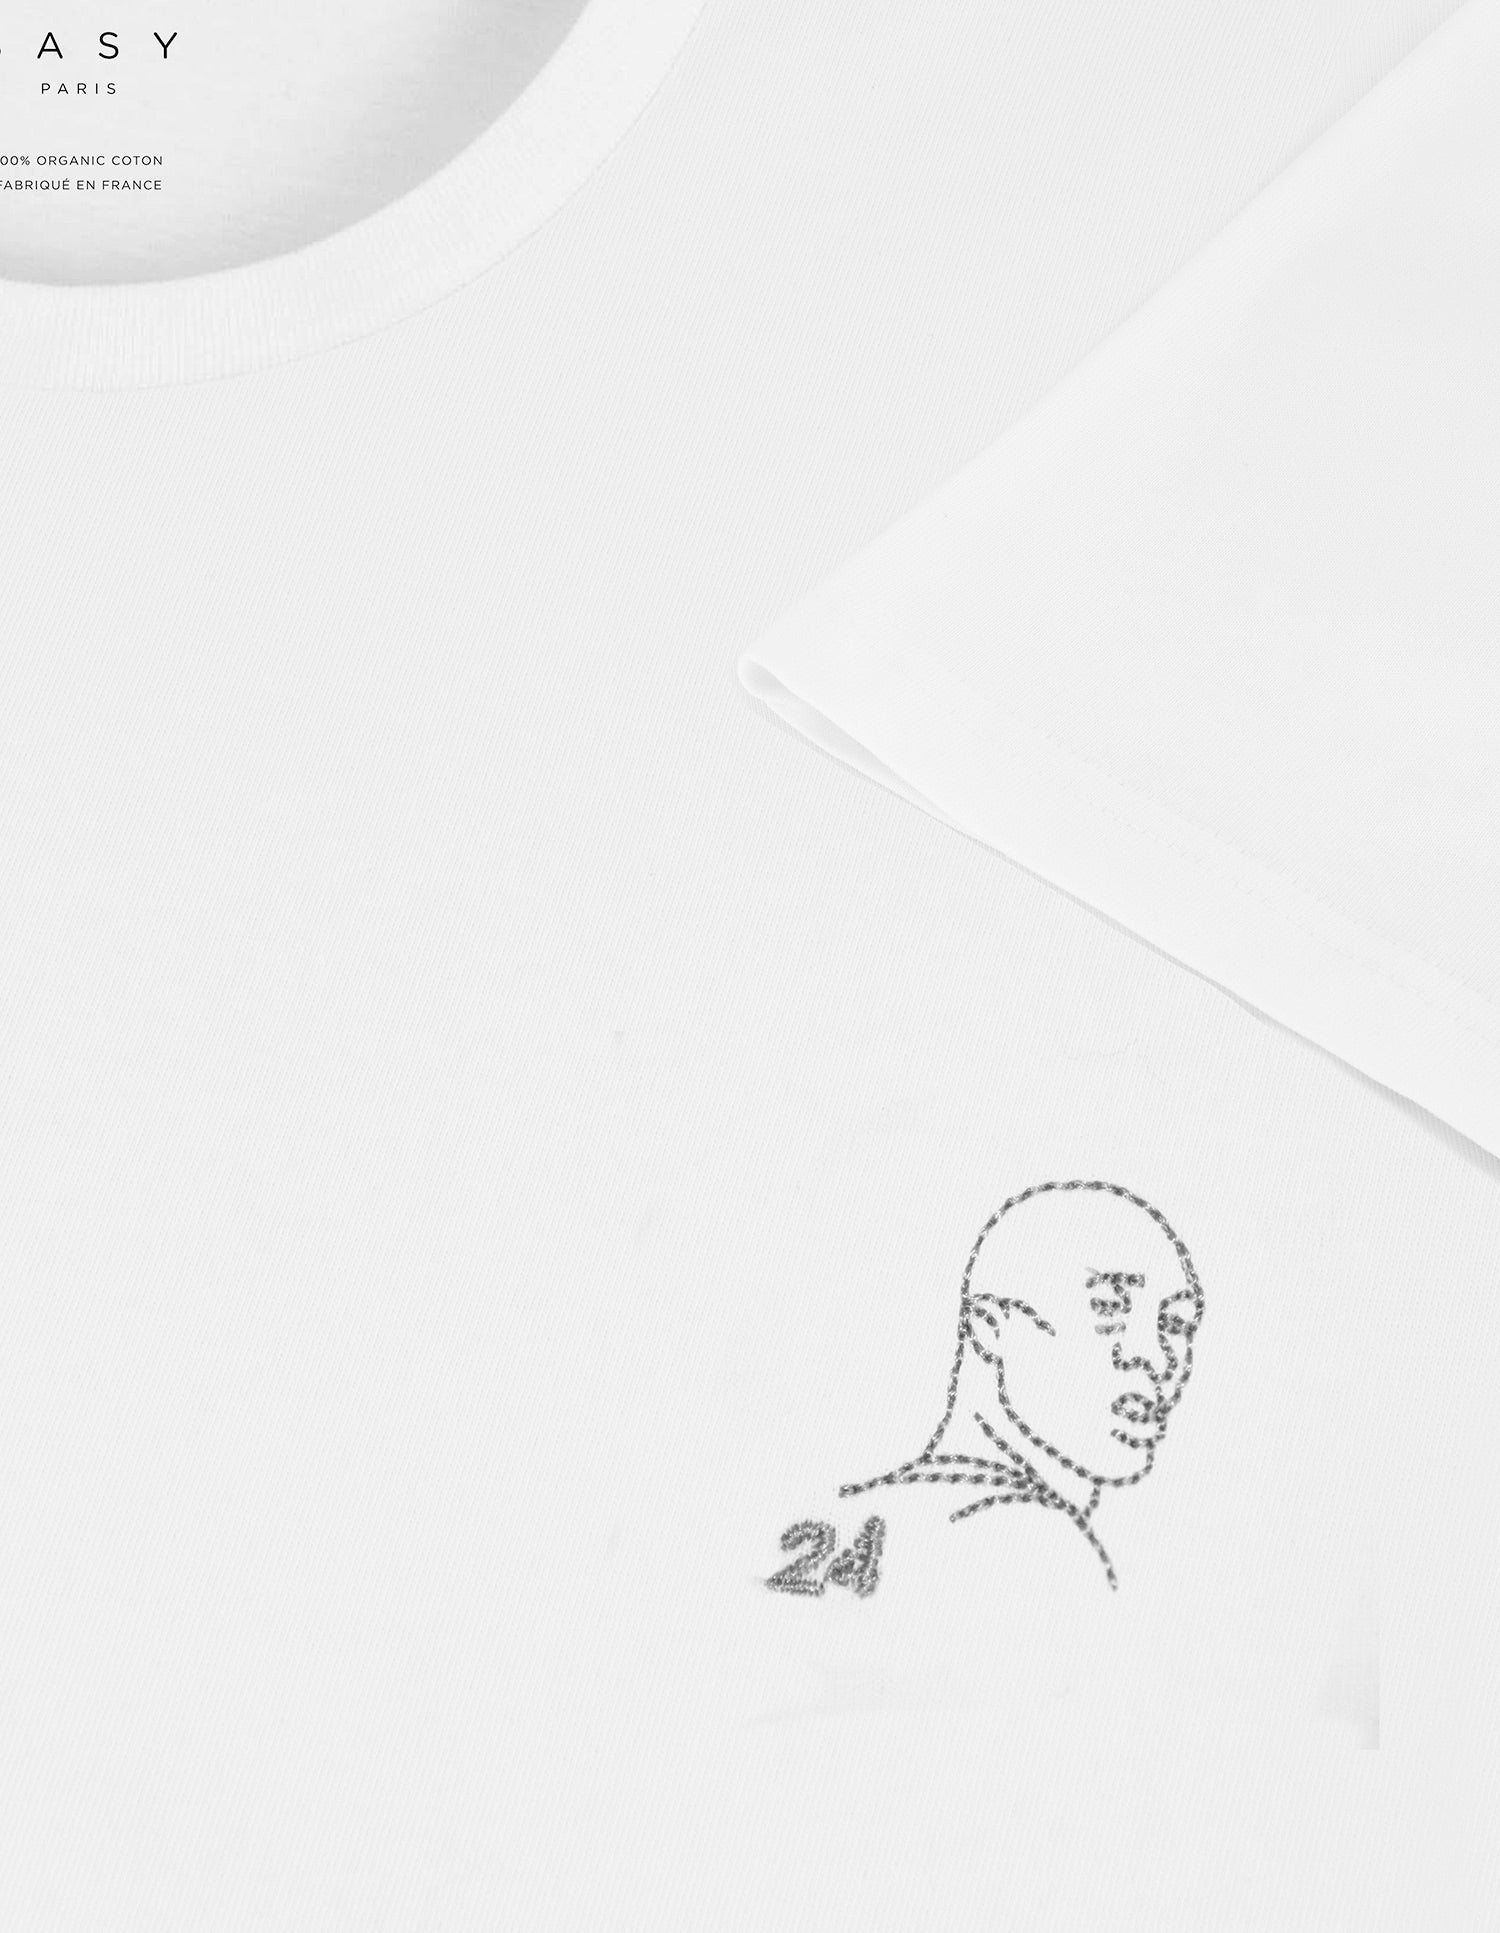 T-shirt blanc brodé Kobe Bryant